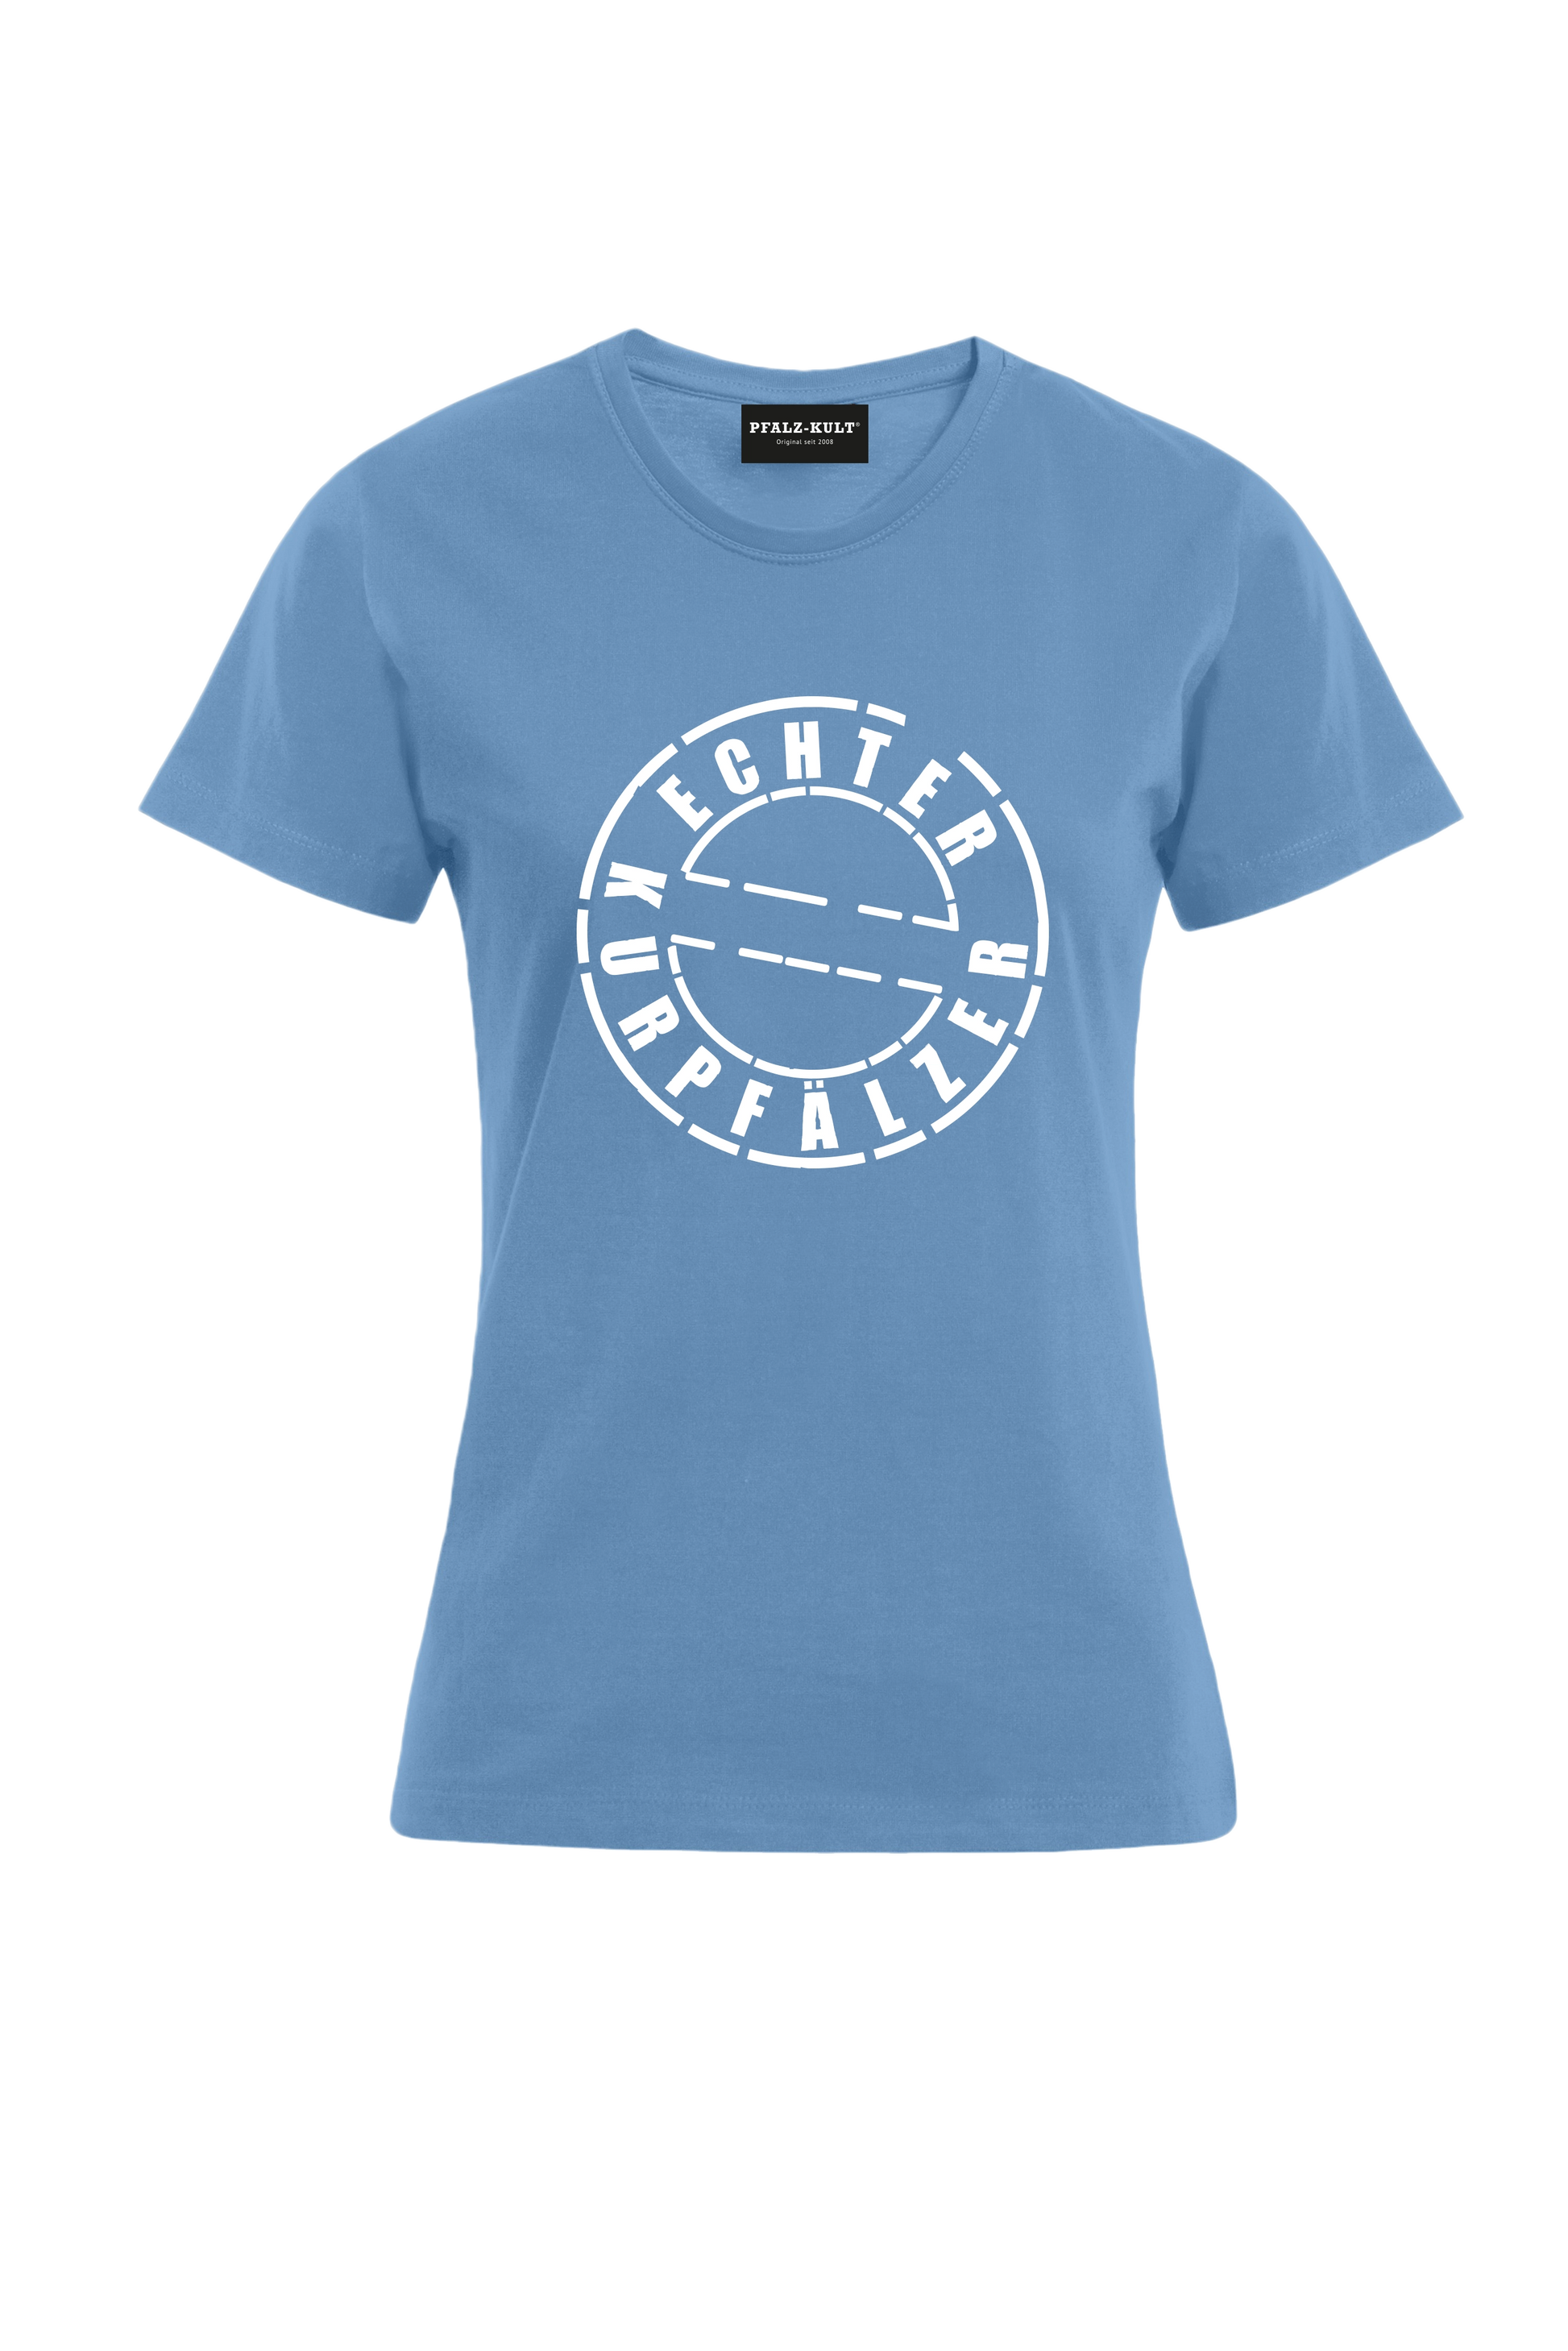 hellblaues Damen T-Shirt mit dem Aufdruck "Echter Kurpfälzer" von Pfalz-Kult. Trendige Mode aus der Pfalz für Pälzr.